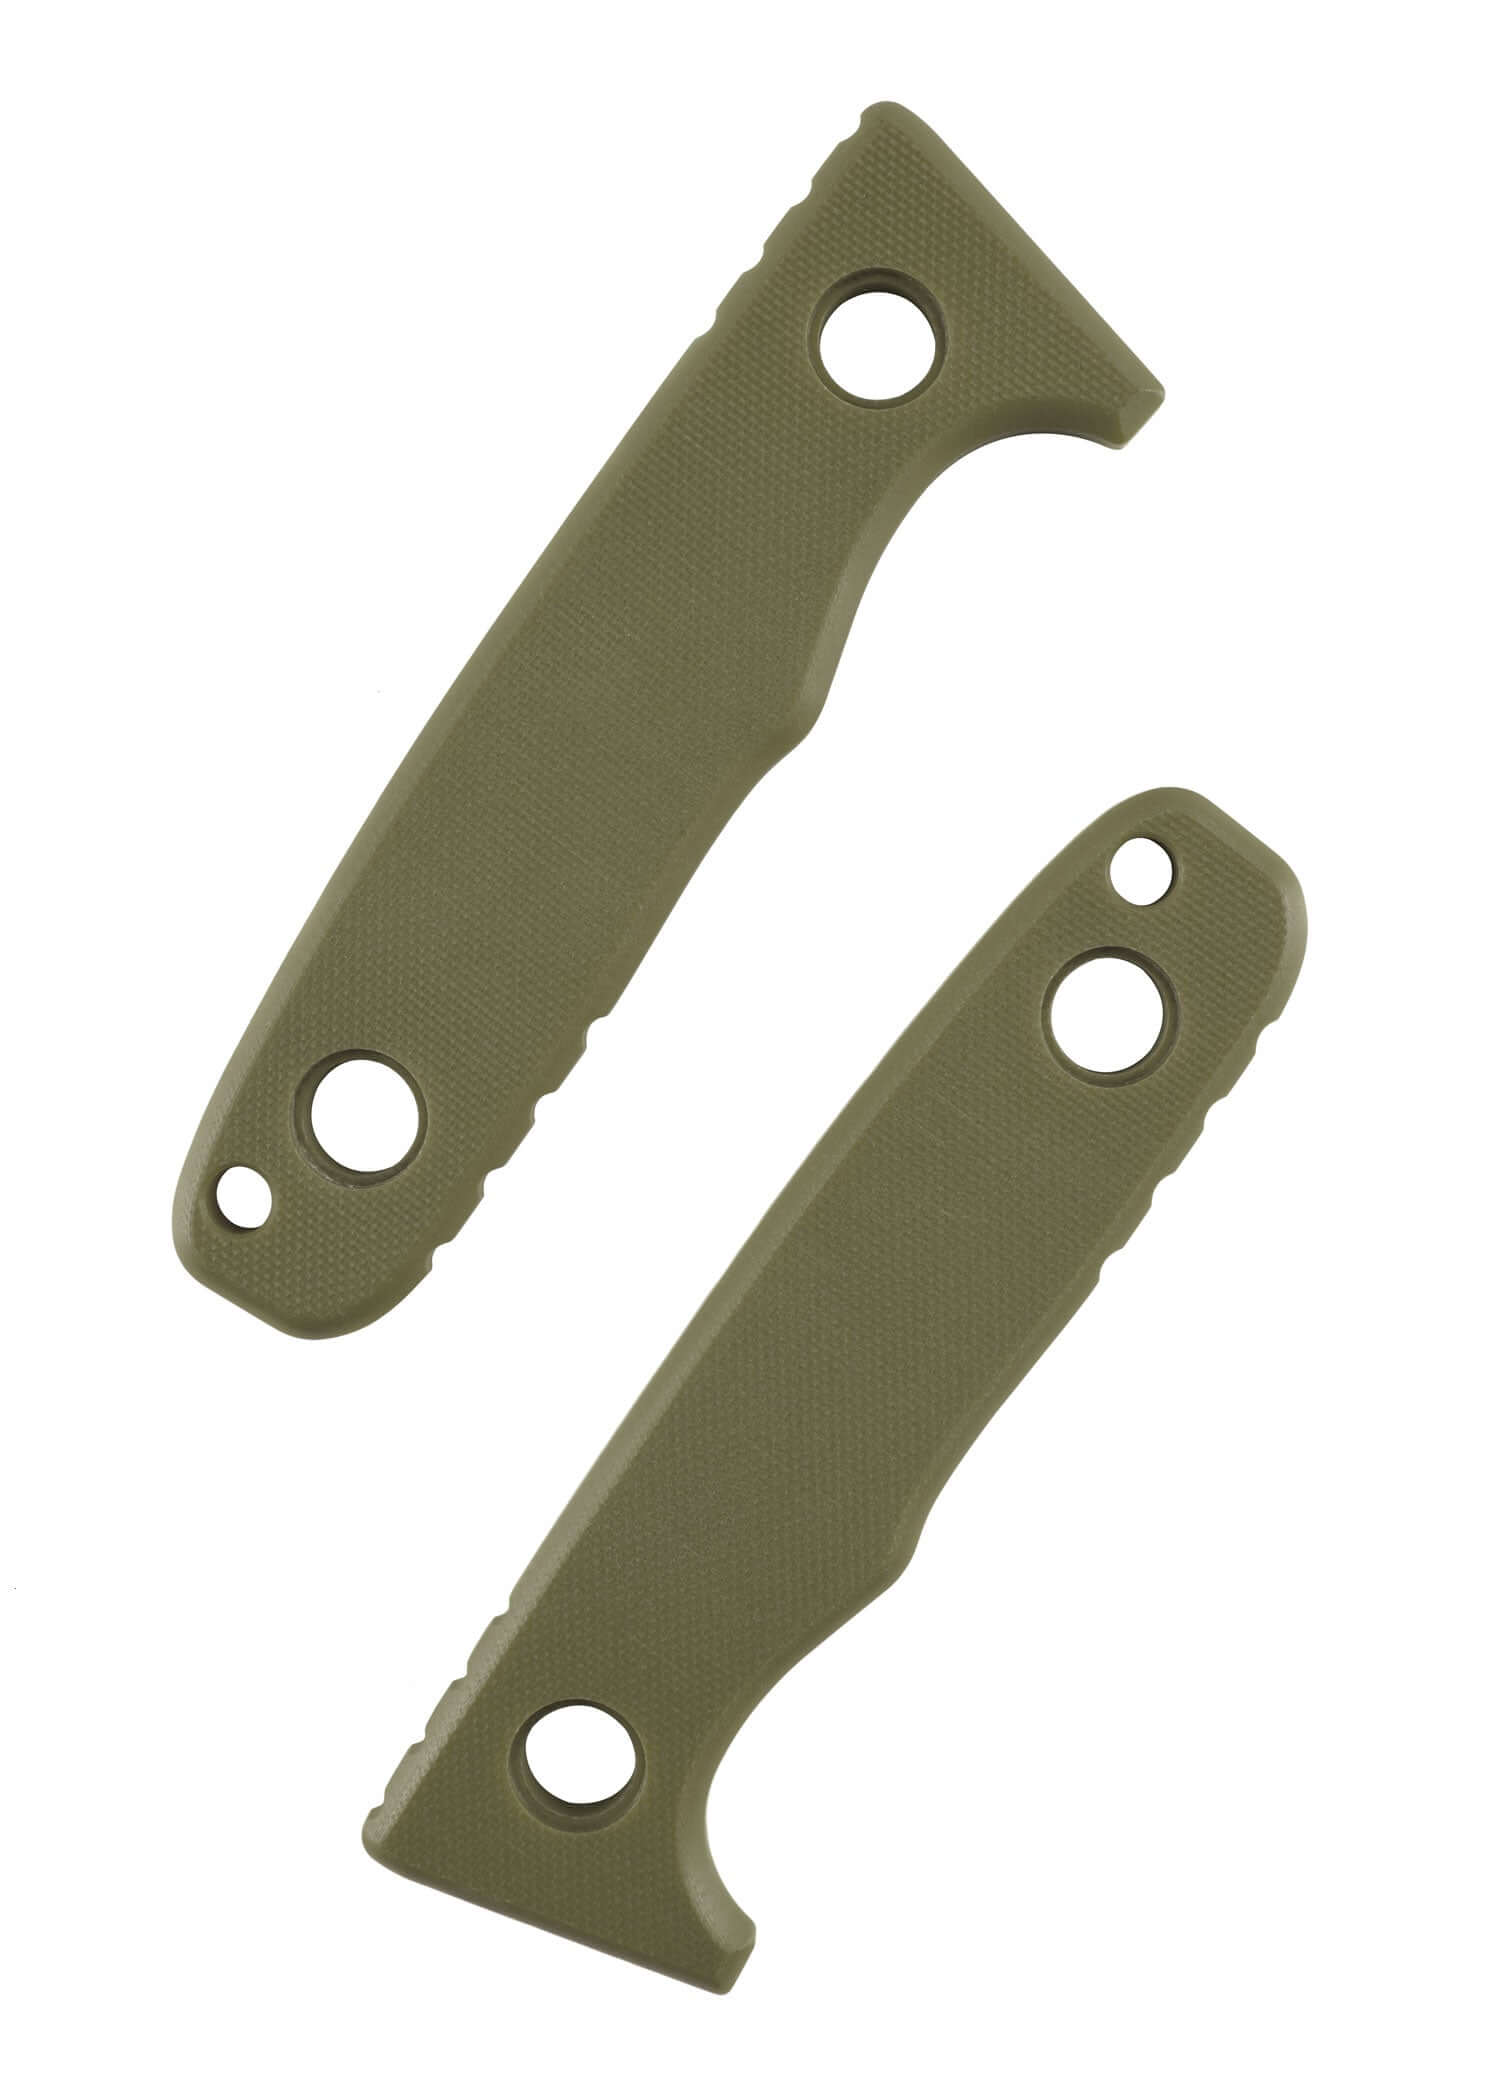 Eine linke und rechte Griffschale eines Schnitzel TRI Messers in Grün